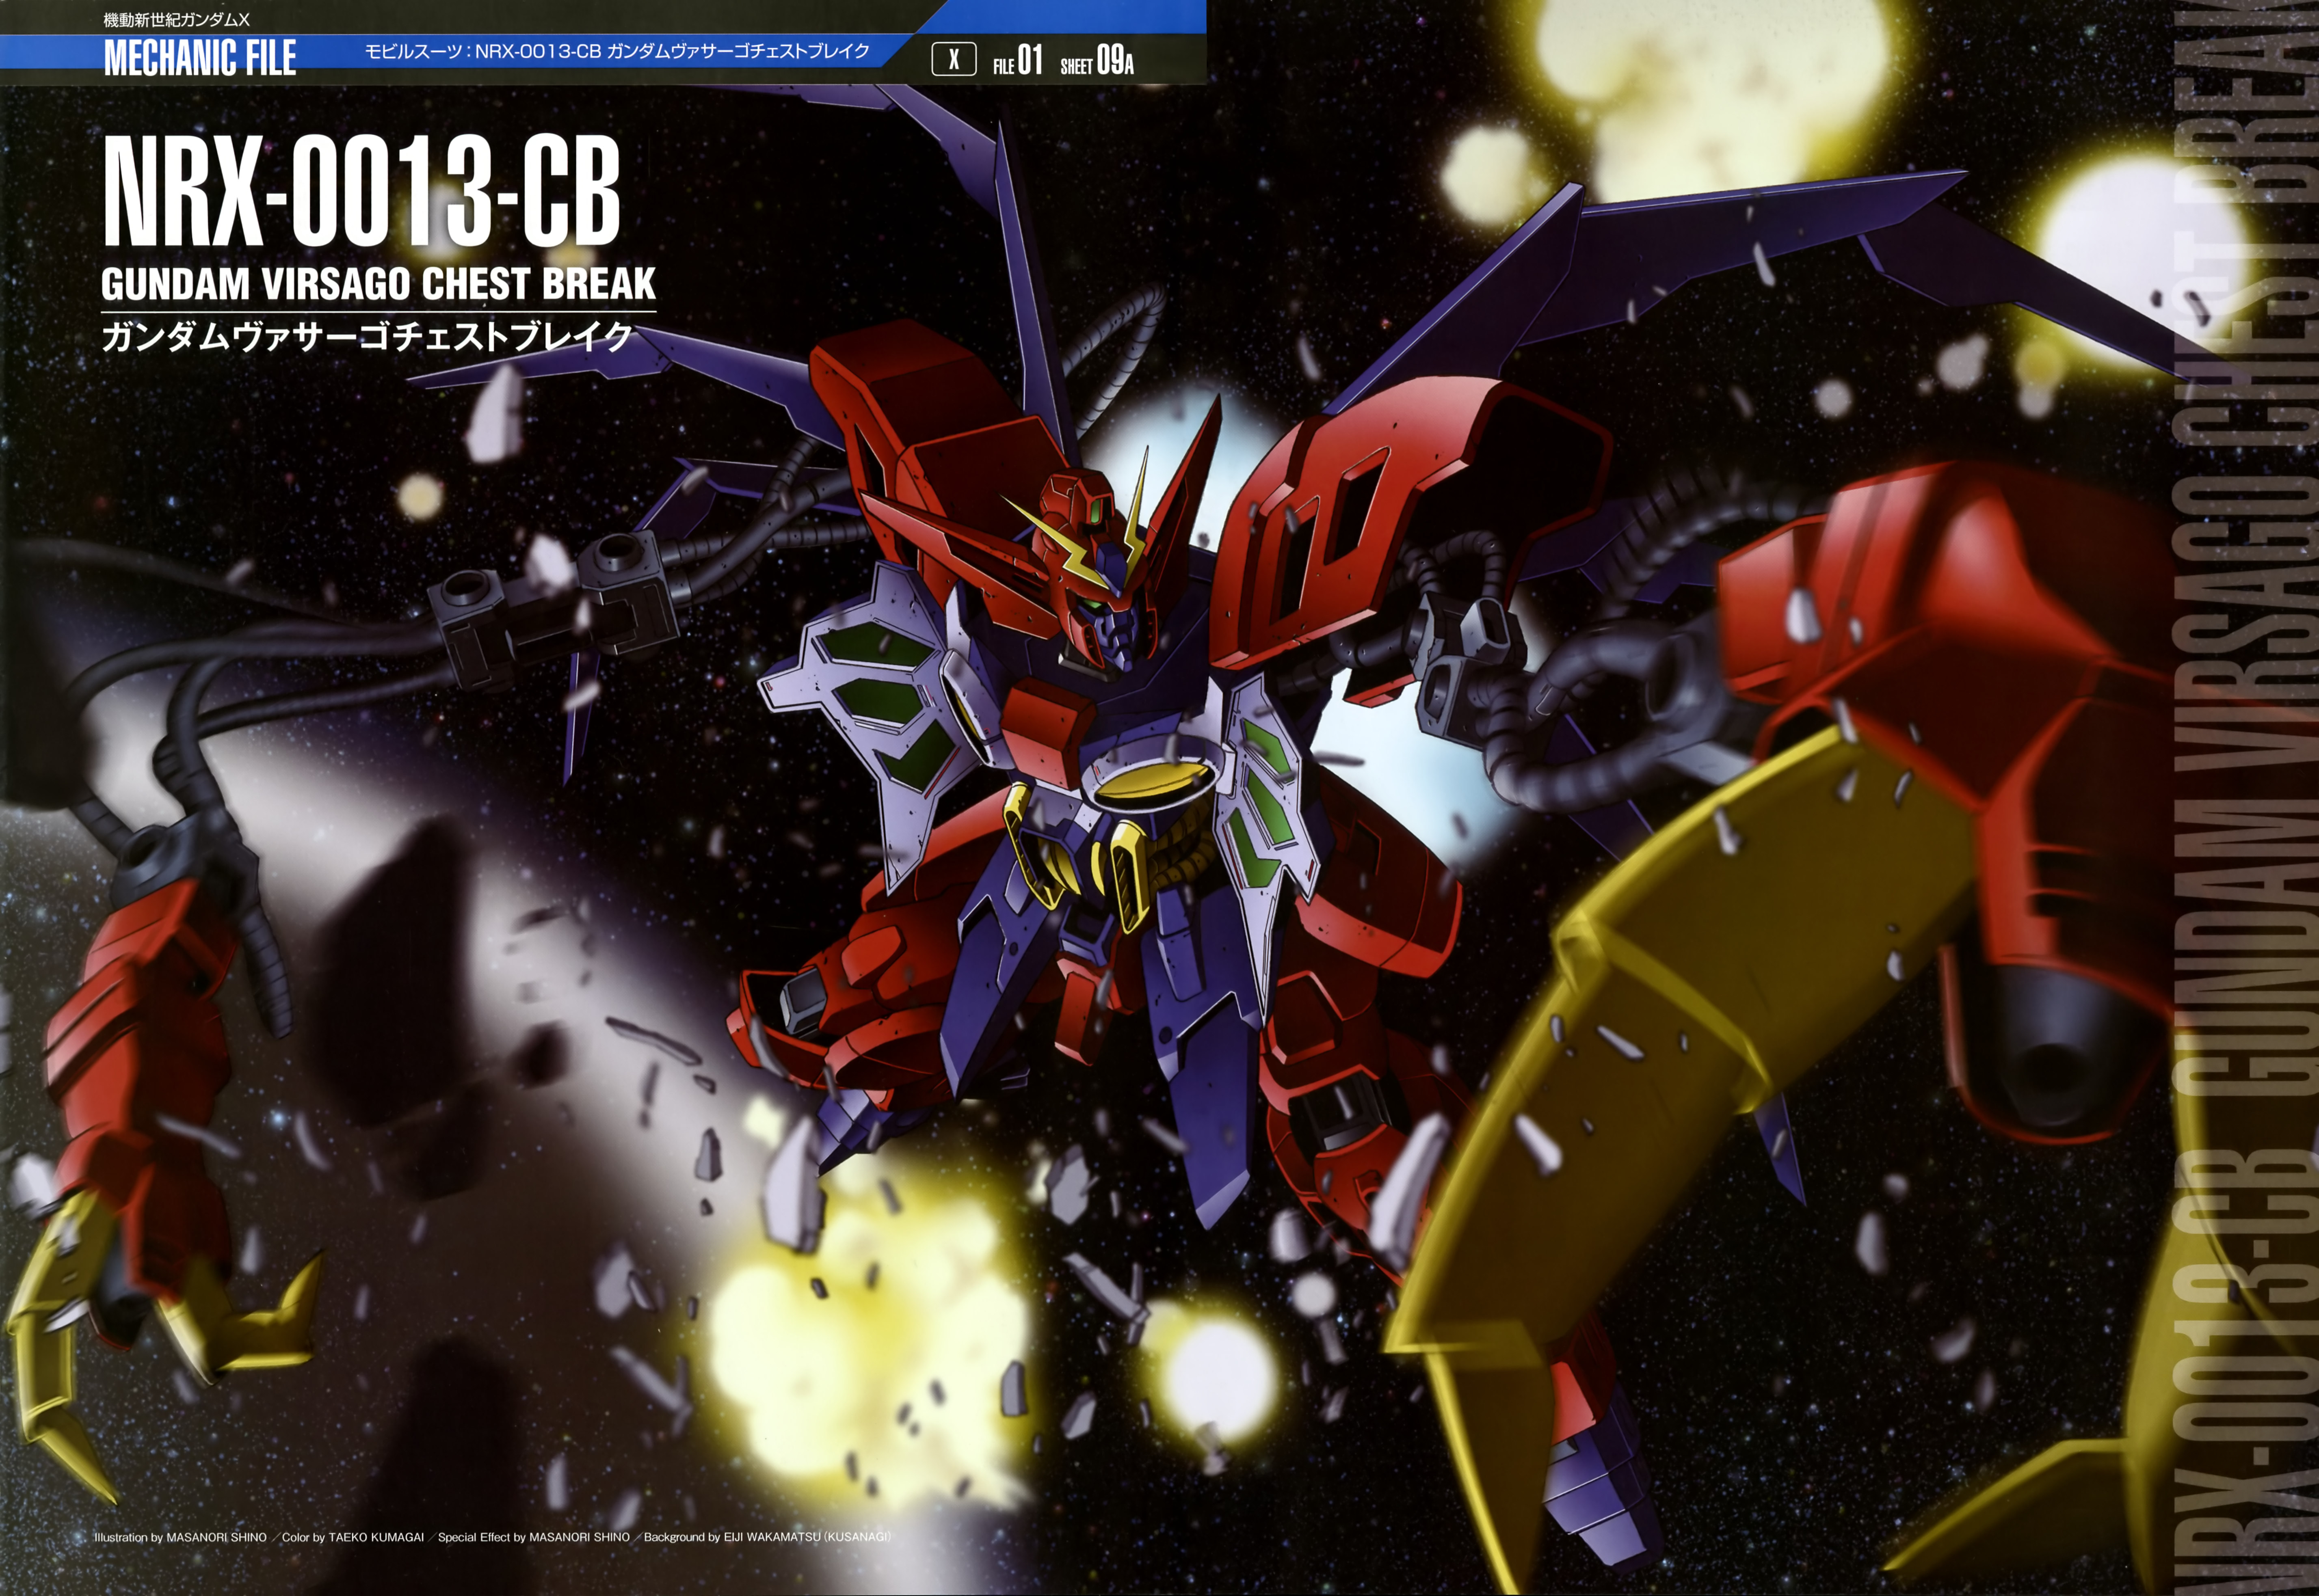 After War Gundam X Wallpapers